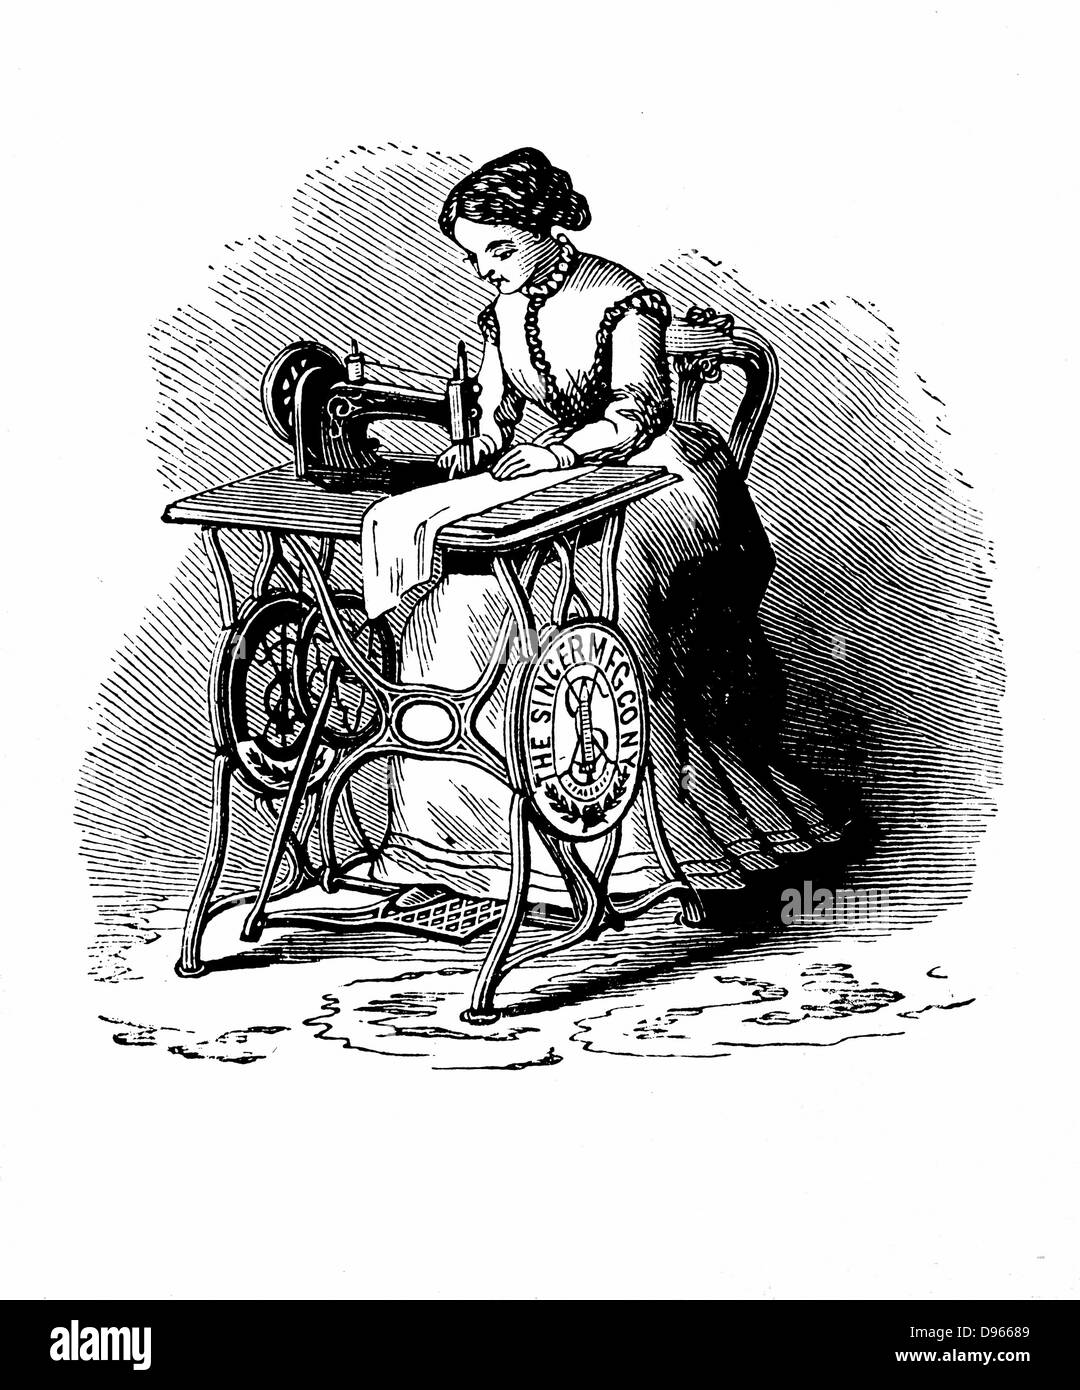 Macchina da cucire da Isaac Merritt Singer (1811-1875): versione a pedale.  Da 'Genius ricompensati o la storia della macchina da cucire', New York,  1880. Incisione su legno Foto stock - Alamy